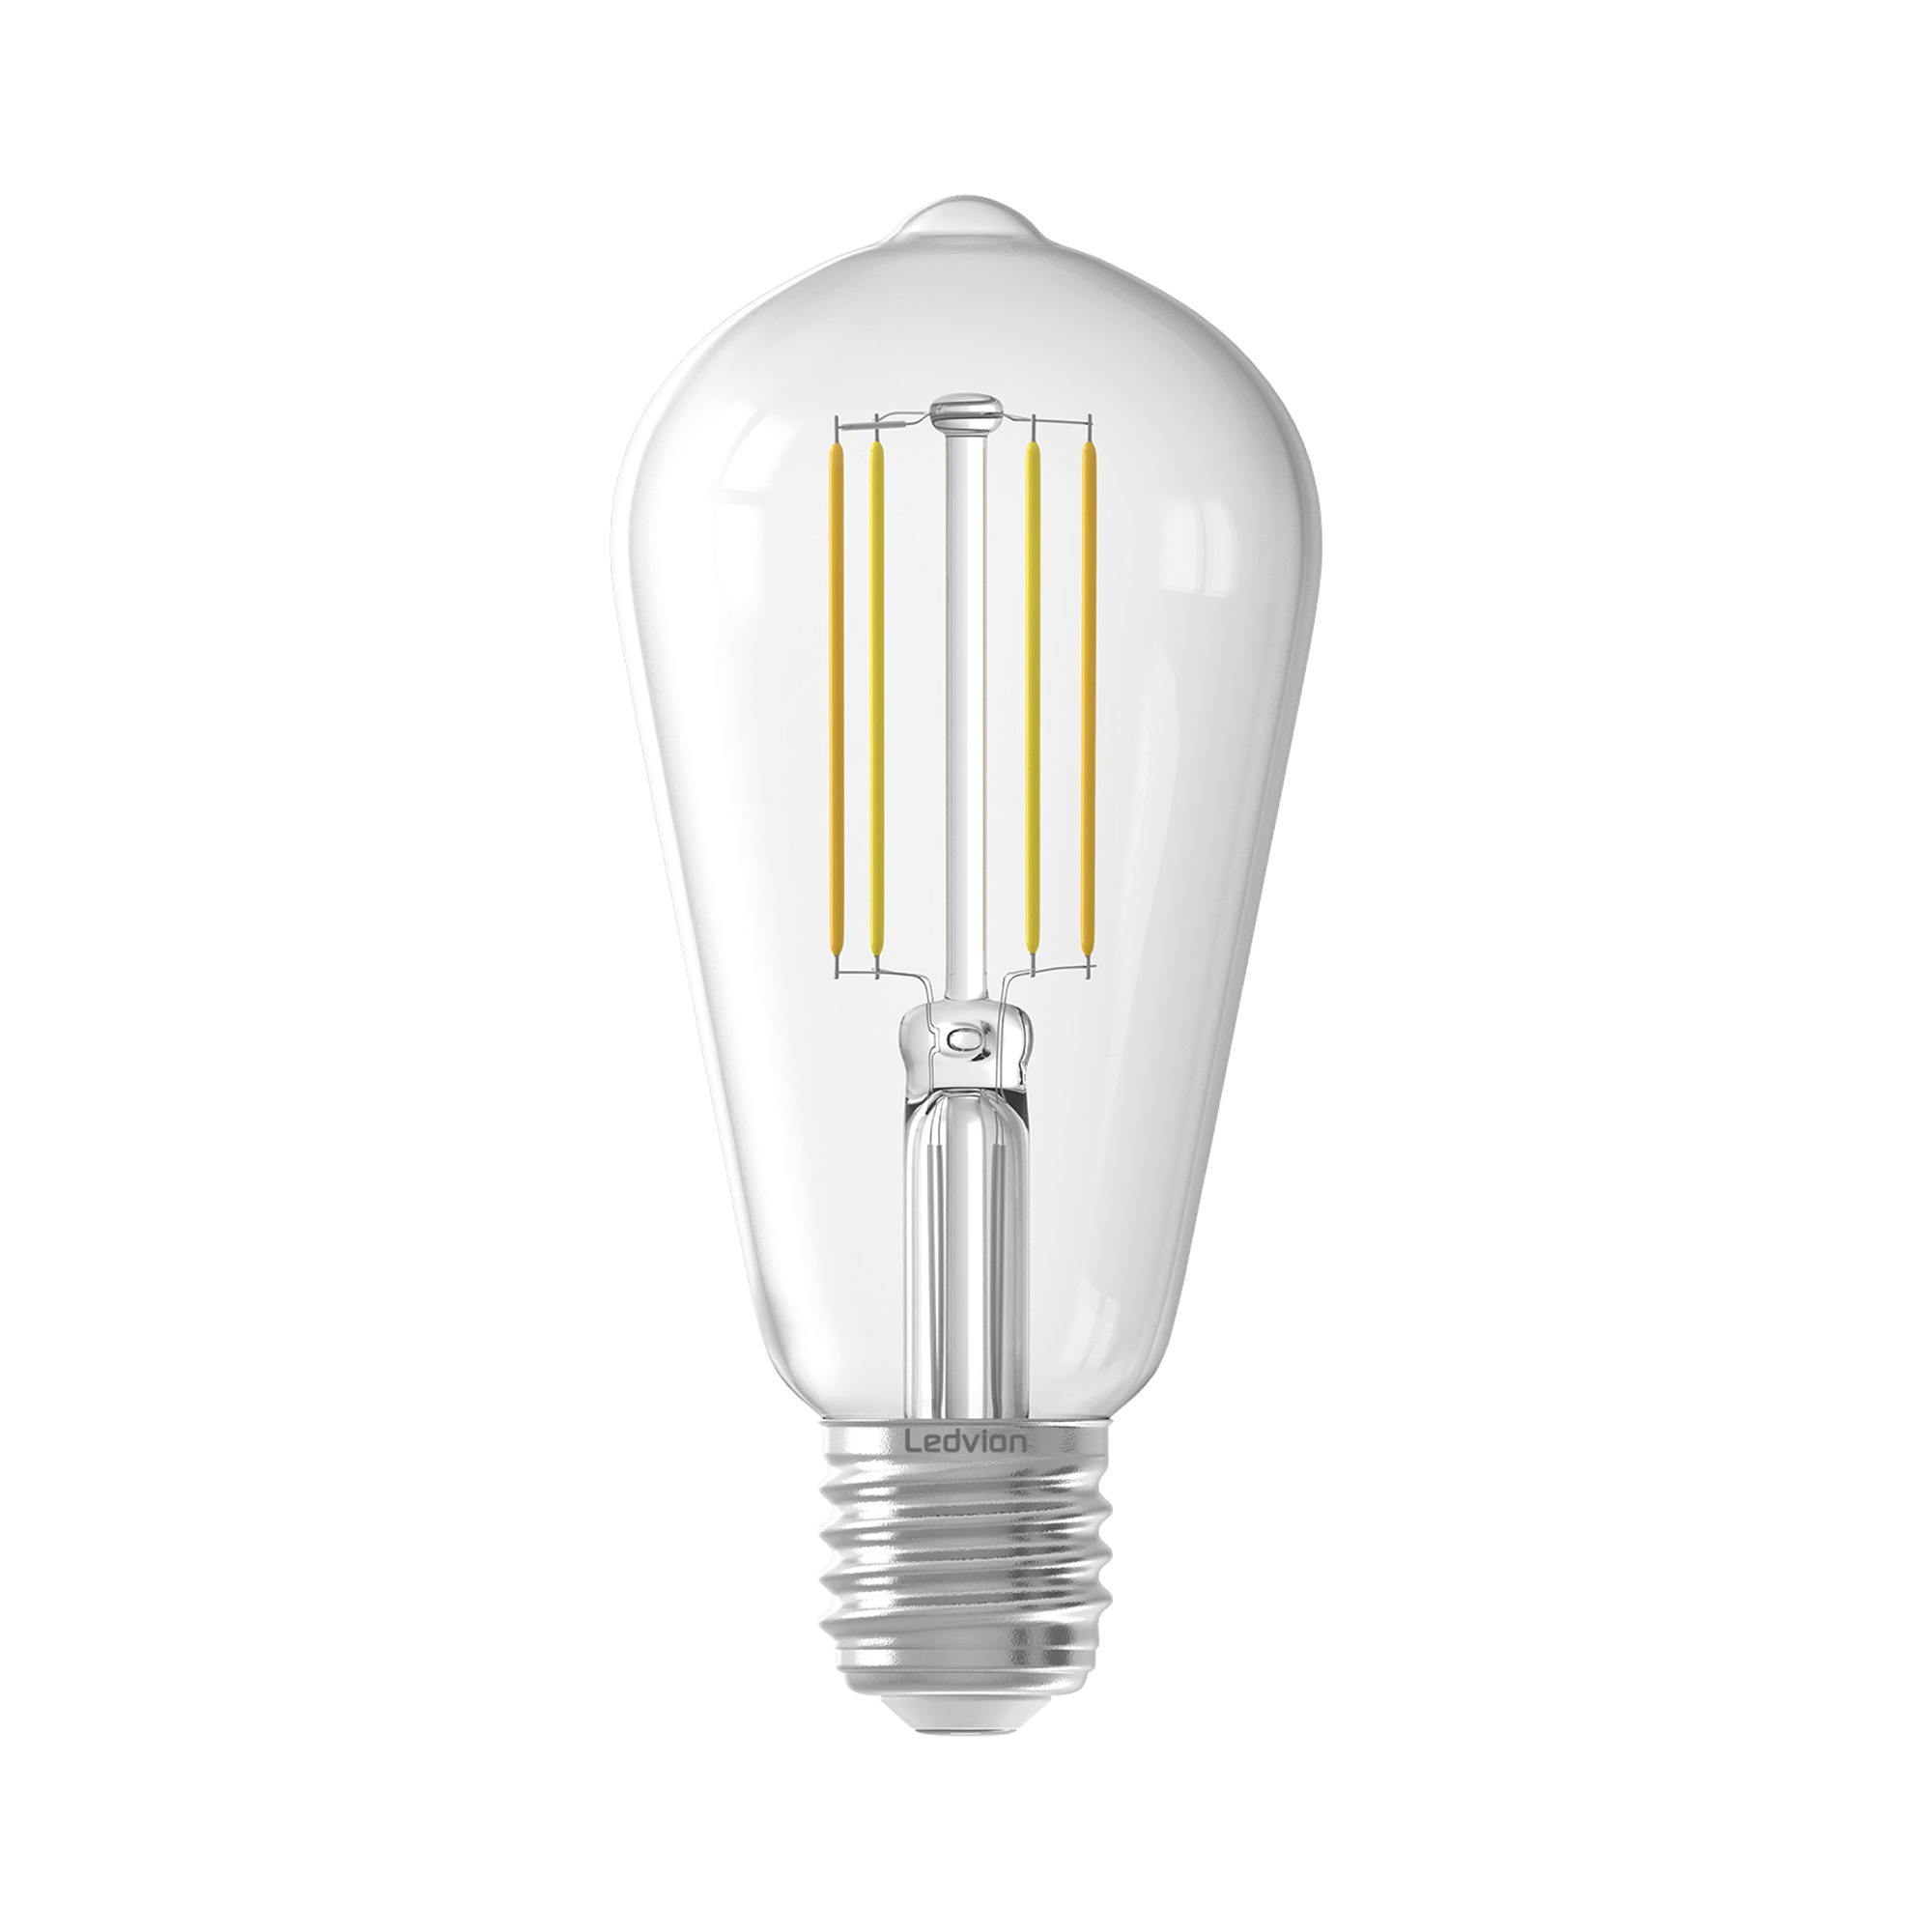 Ampoule LED E27 dimmable, vente d'ampoule LED E27 : Millumine